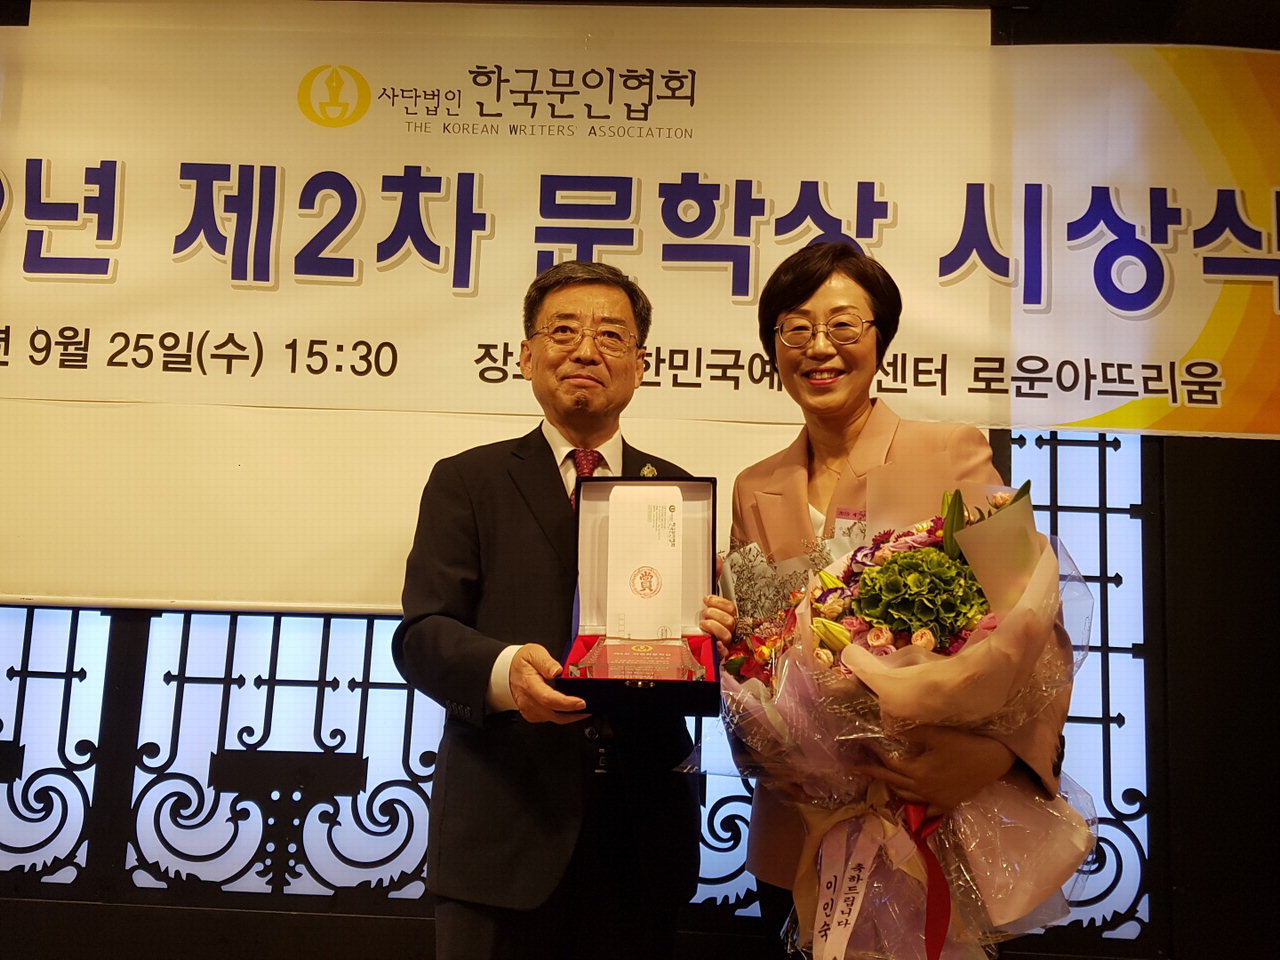 이은희 수필가가 한국문인협회가 주관하는 제5회 박종화문학상을 수상했다.